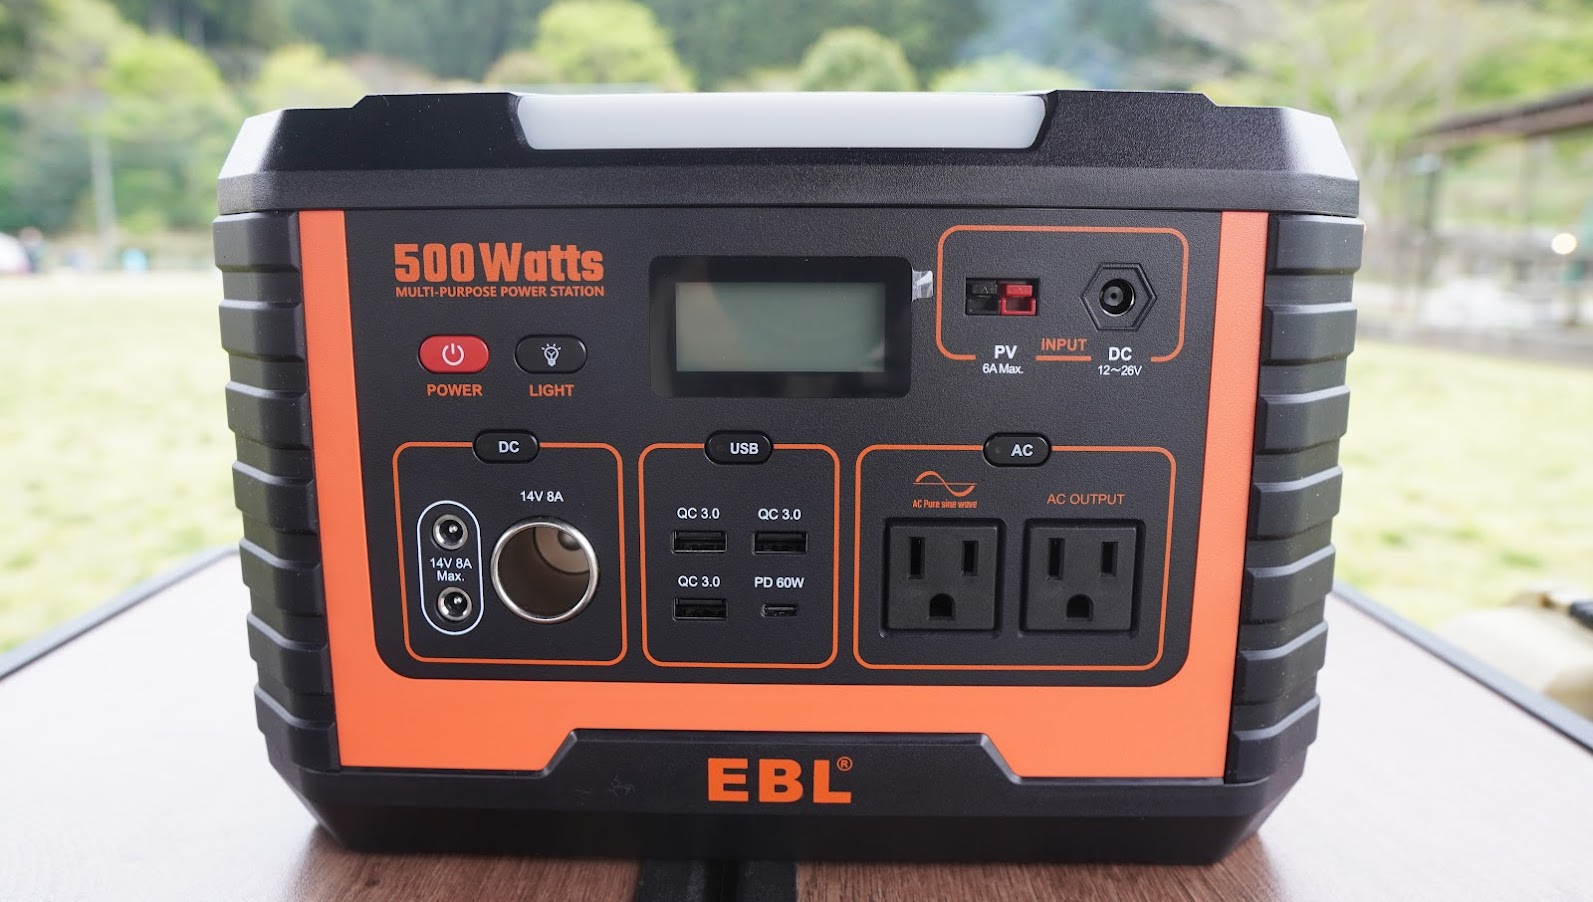 EBLのポータブル電源500Wをキャンプで使ってみたレビュー【PR 